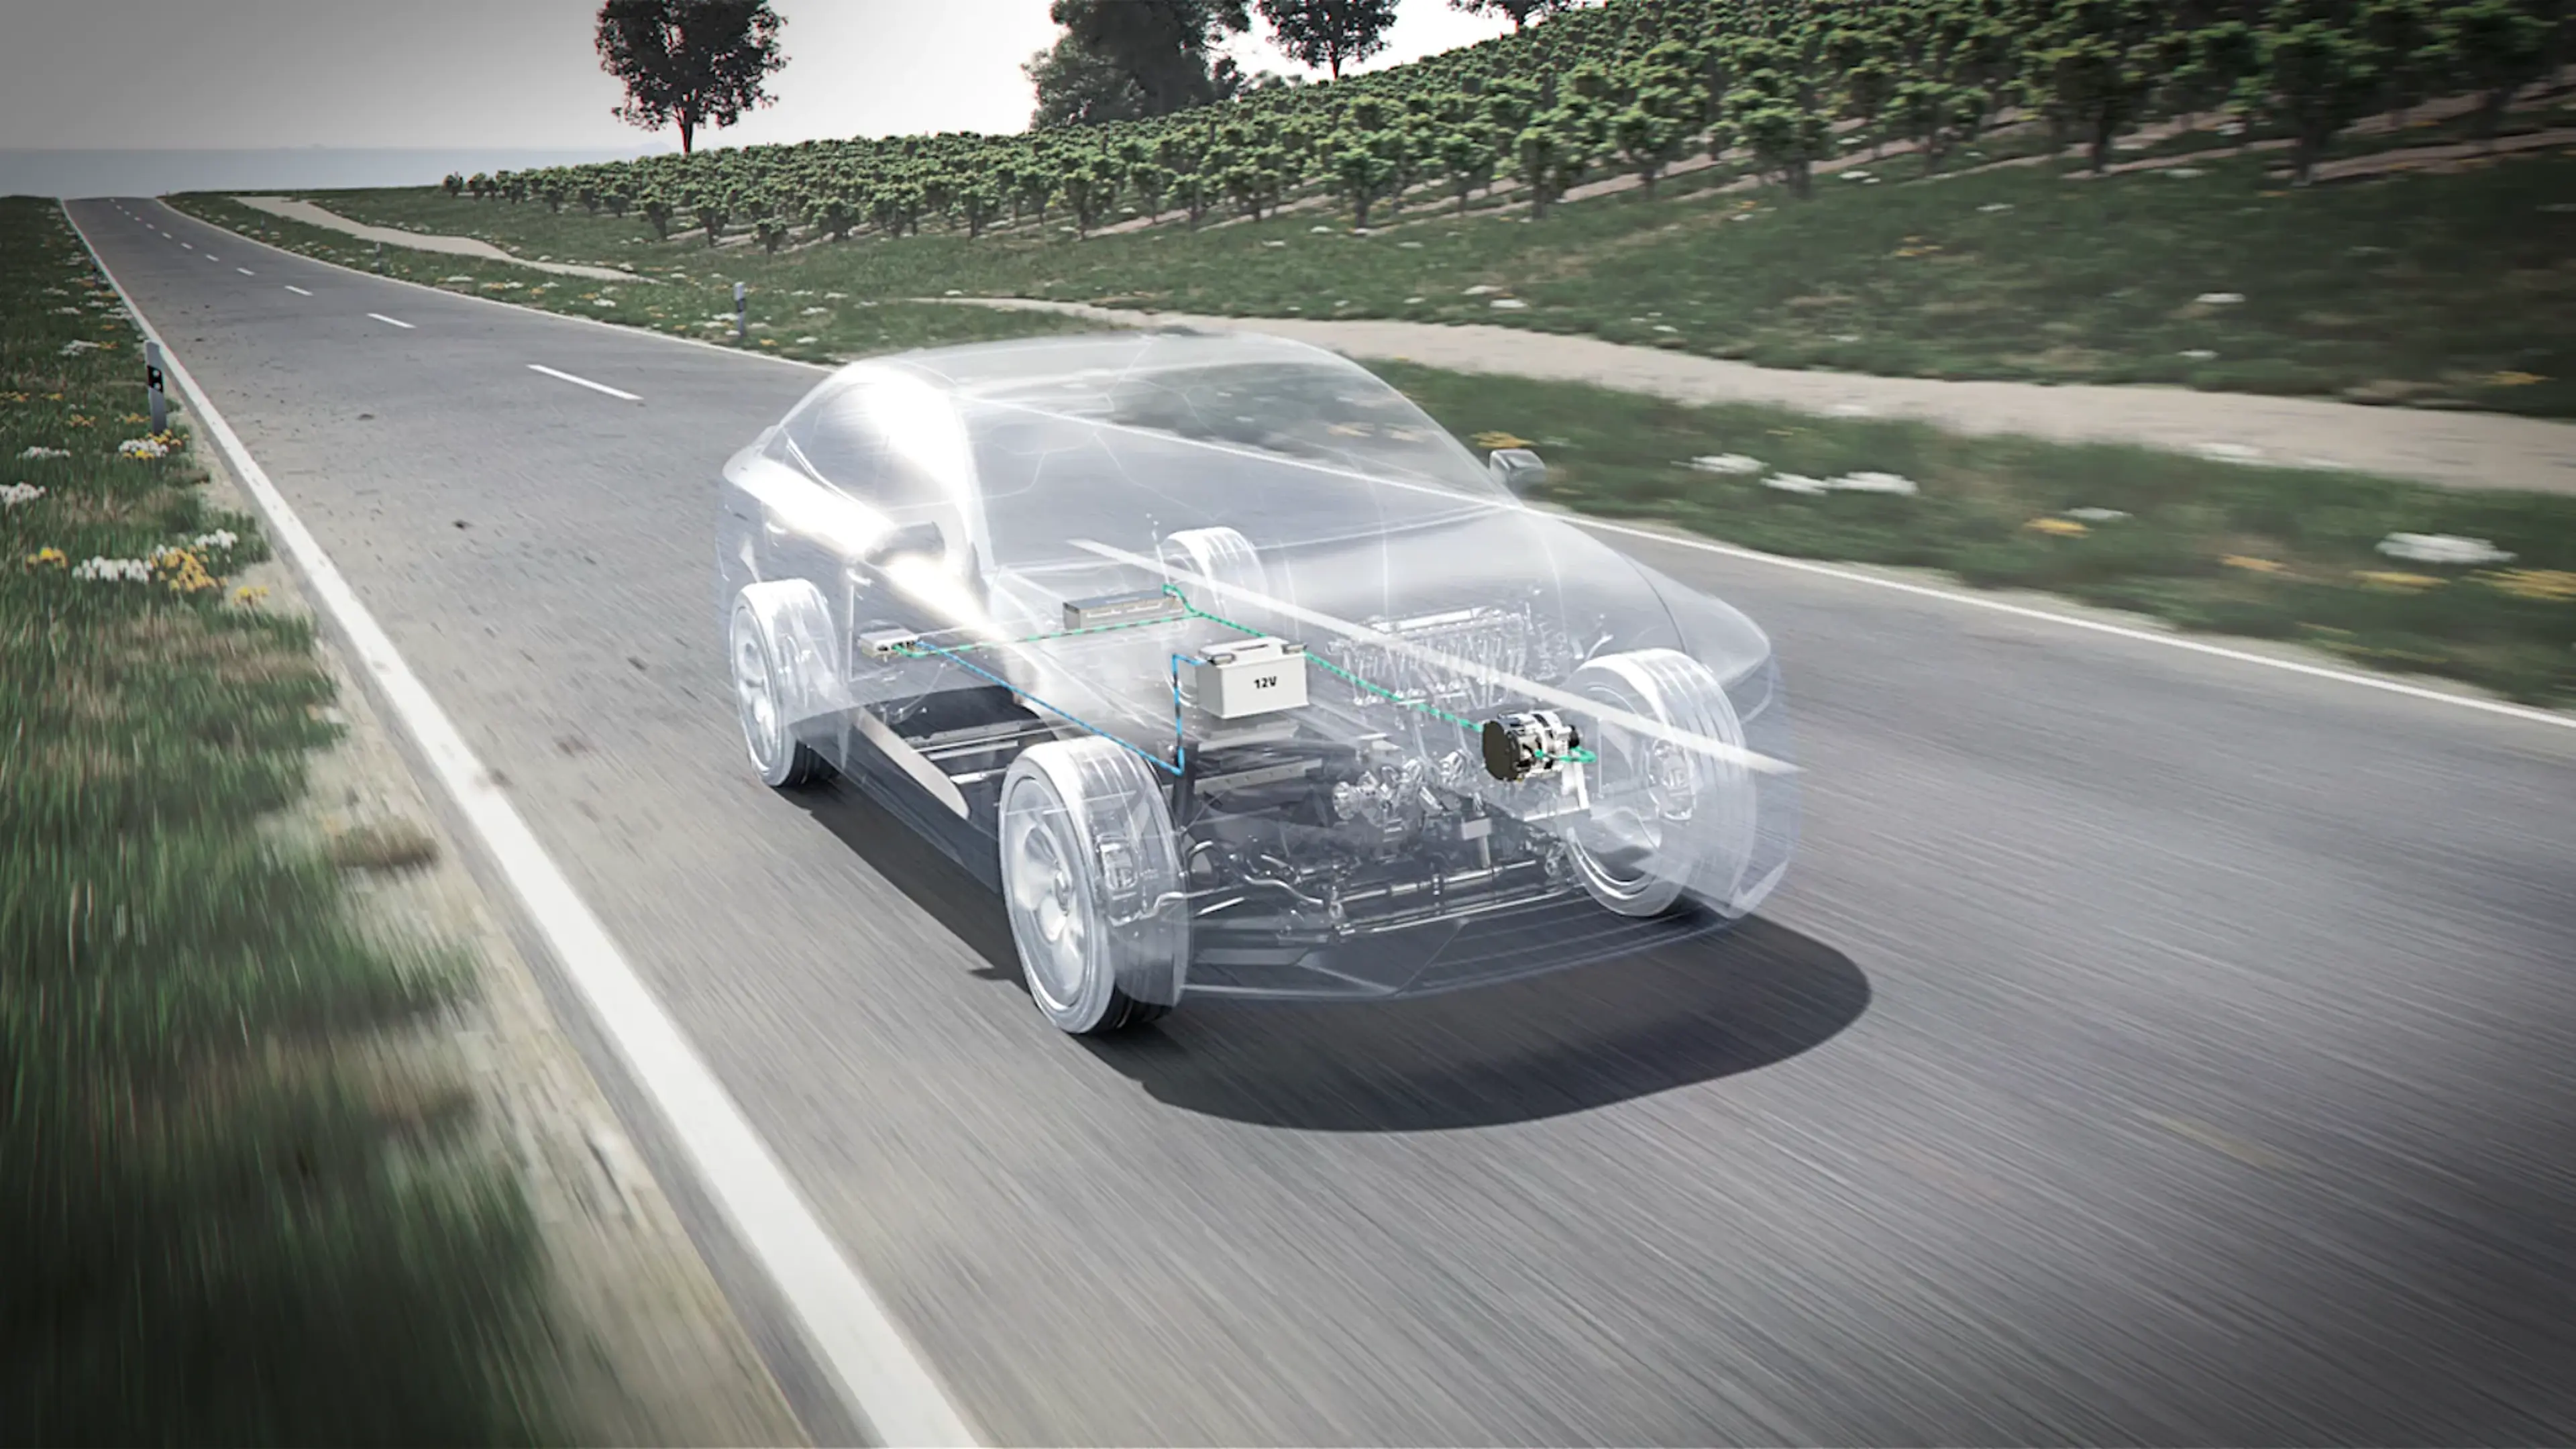 Rendering: Glasfahrzeug mit 48V/Mild Hybrid-Antriebs-Technologie auf Straße